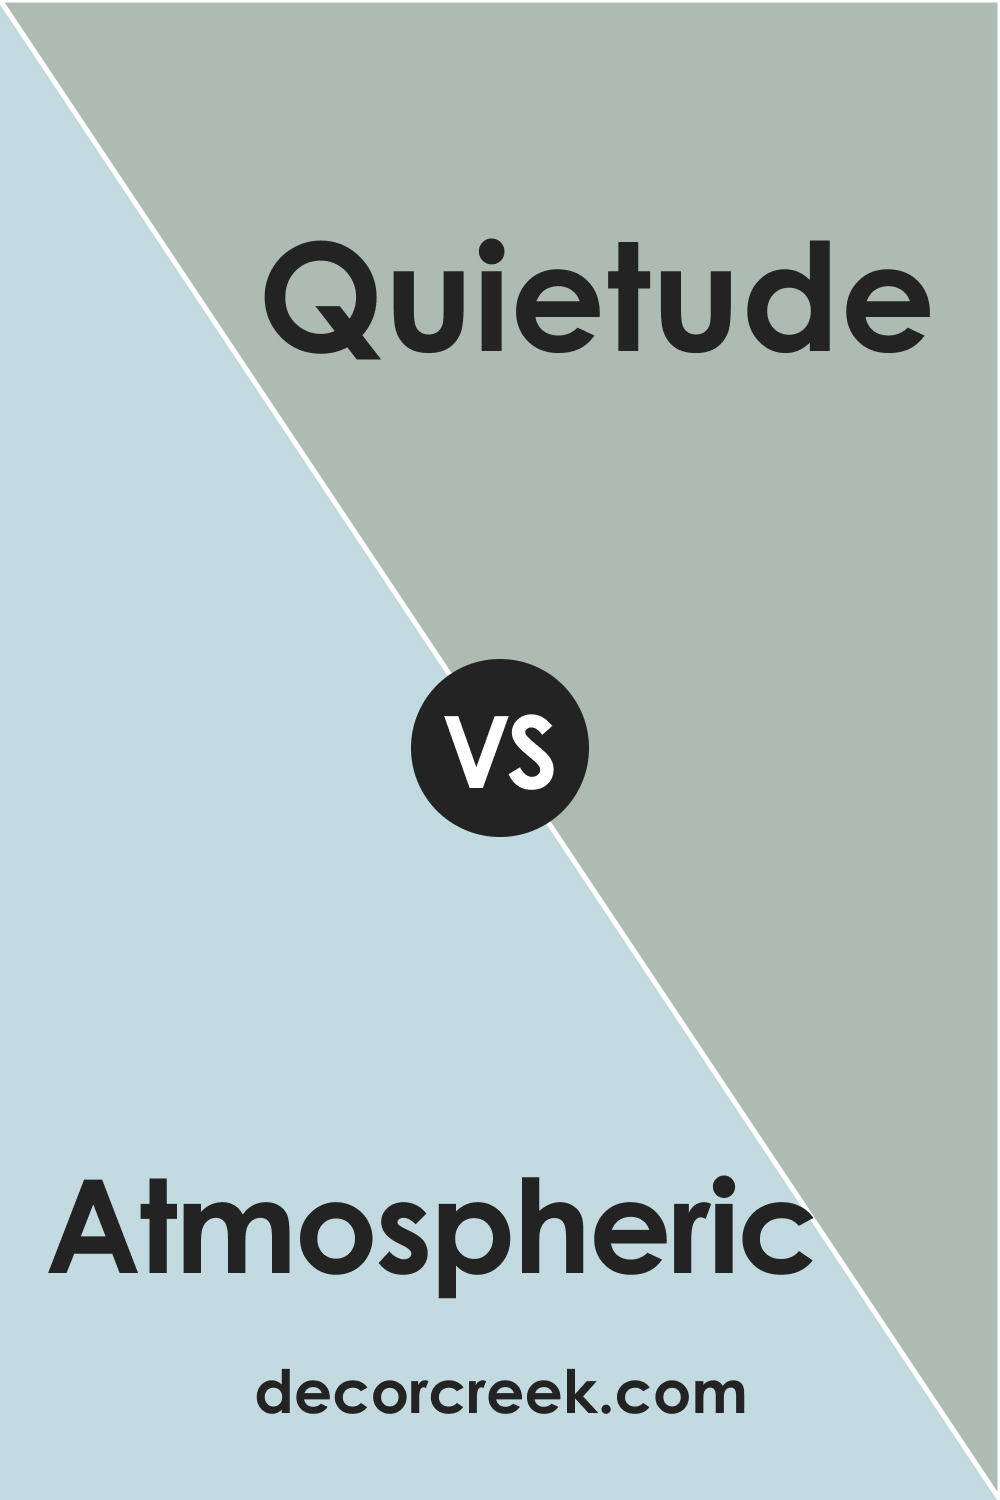 Atmospheric vs Quietude